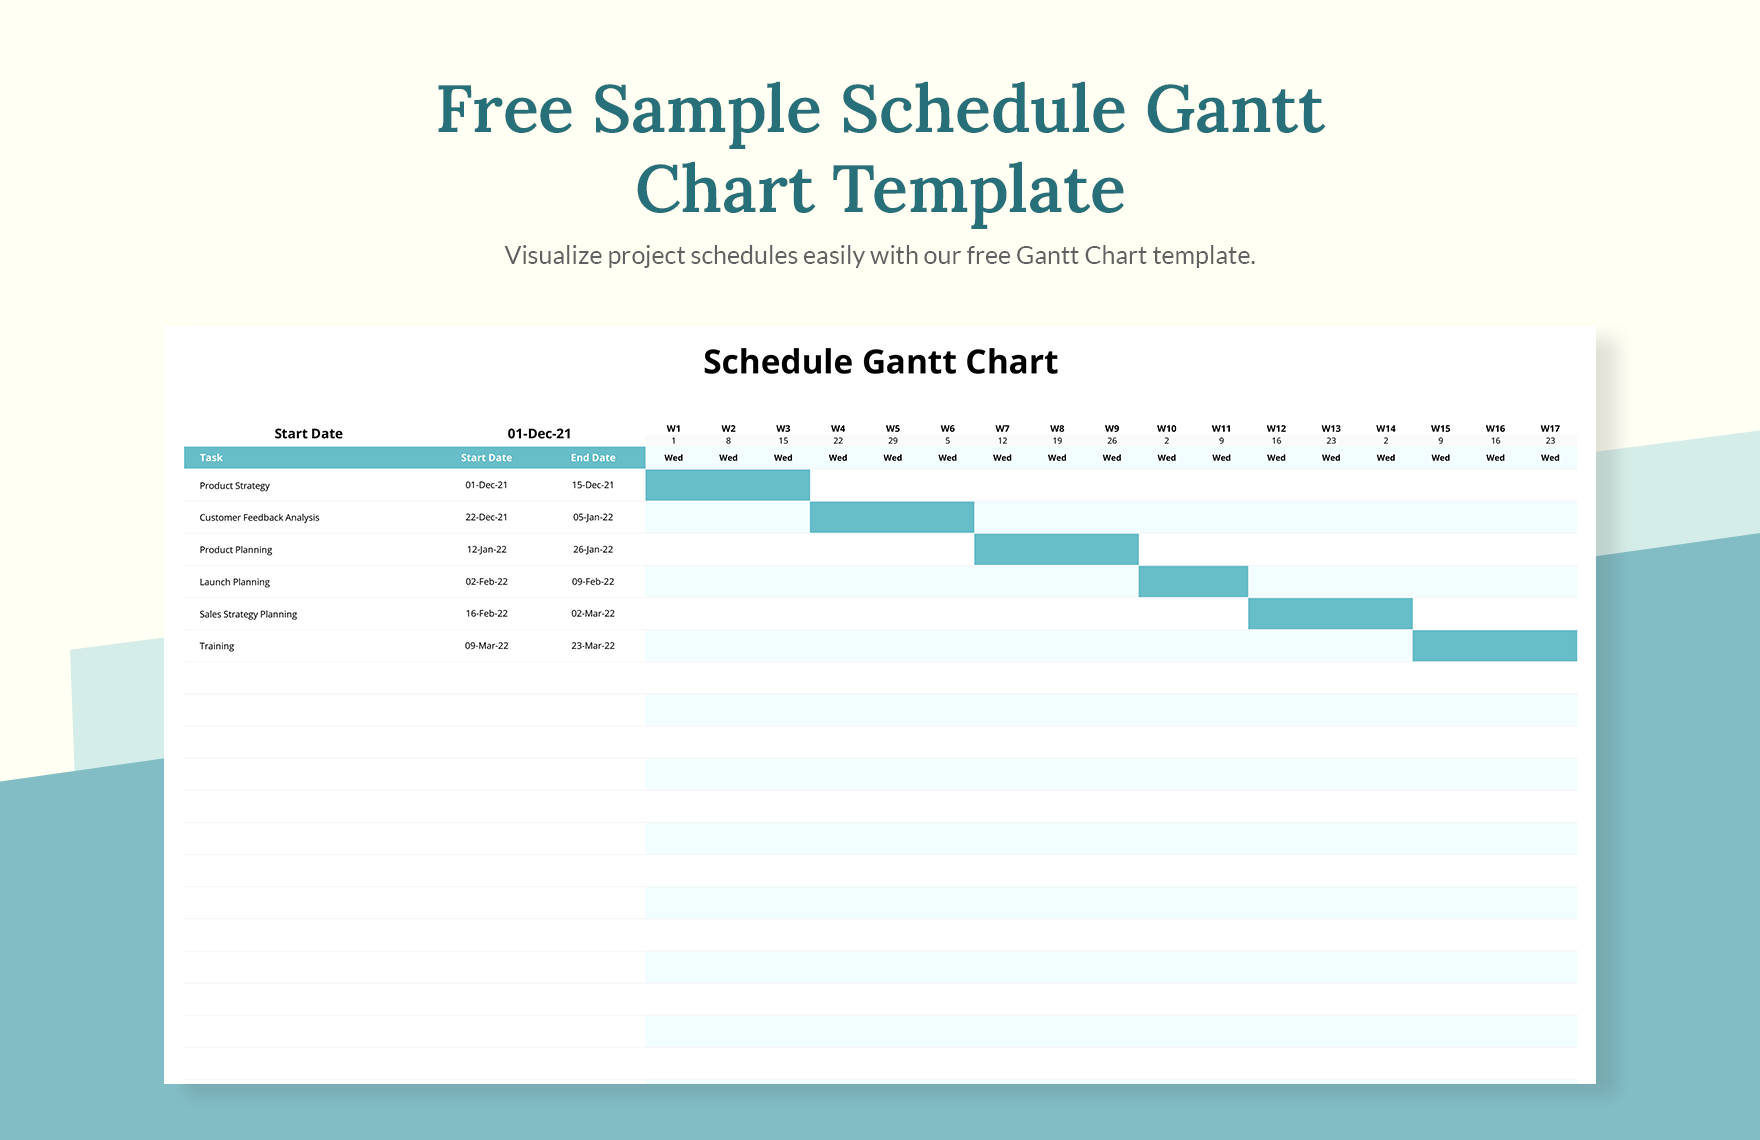 Sample Schedule Gantt Chart Template